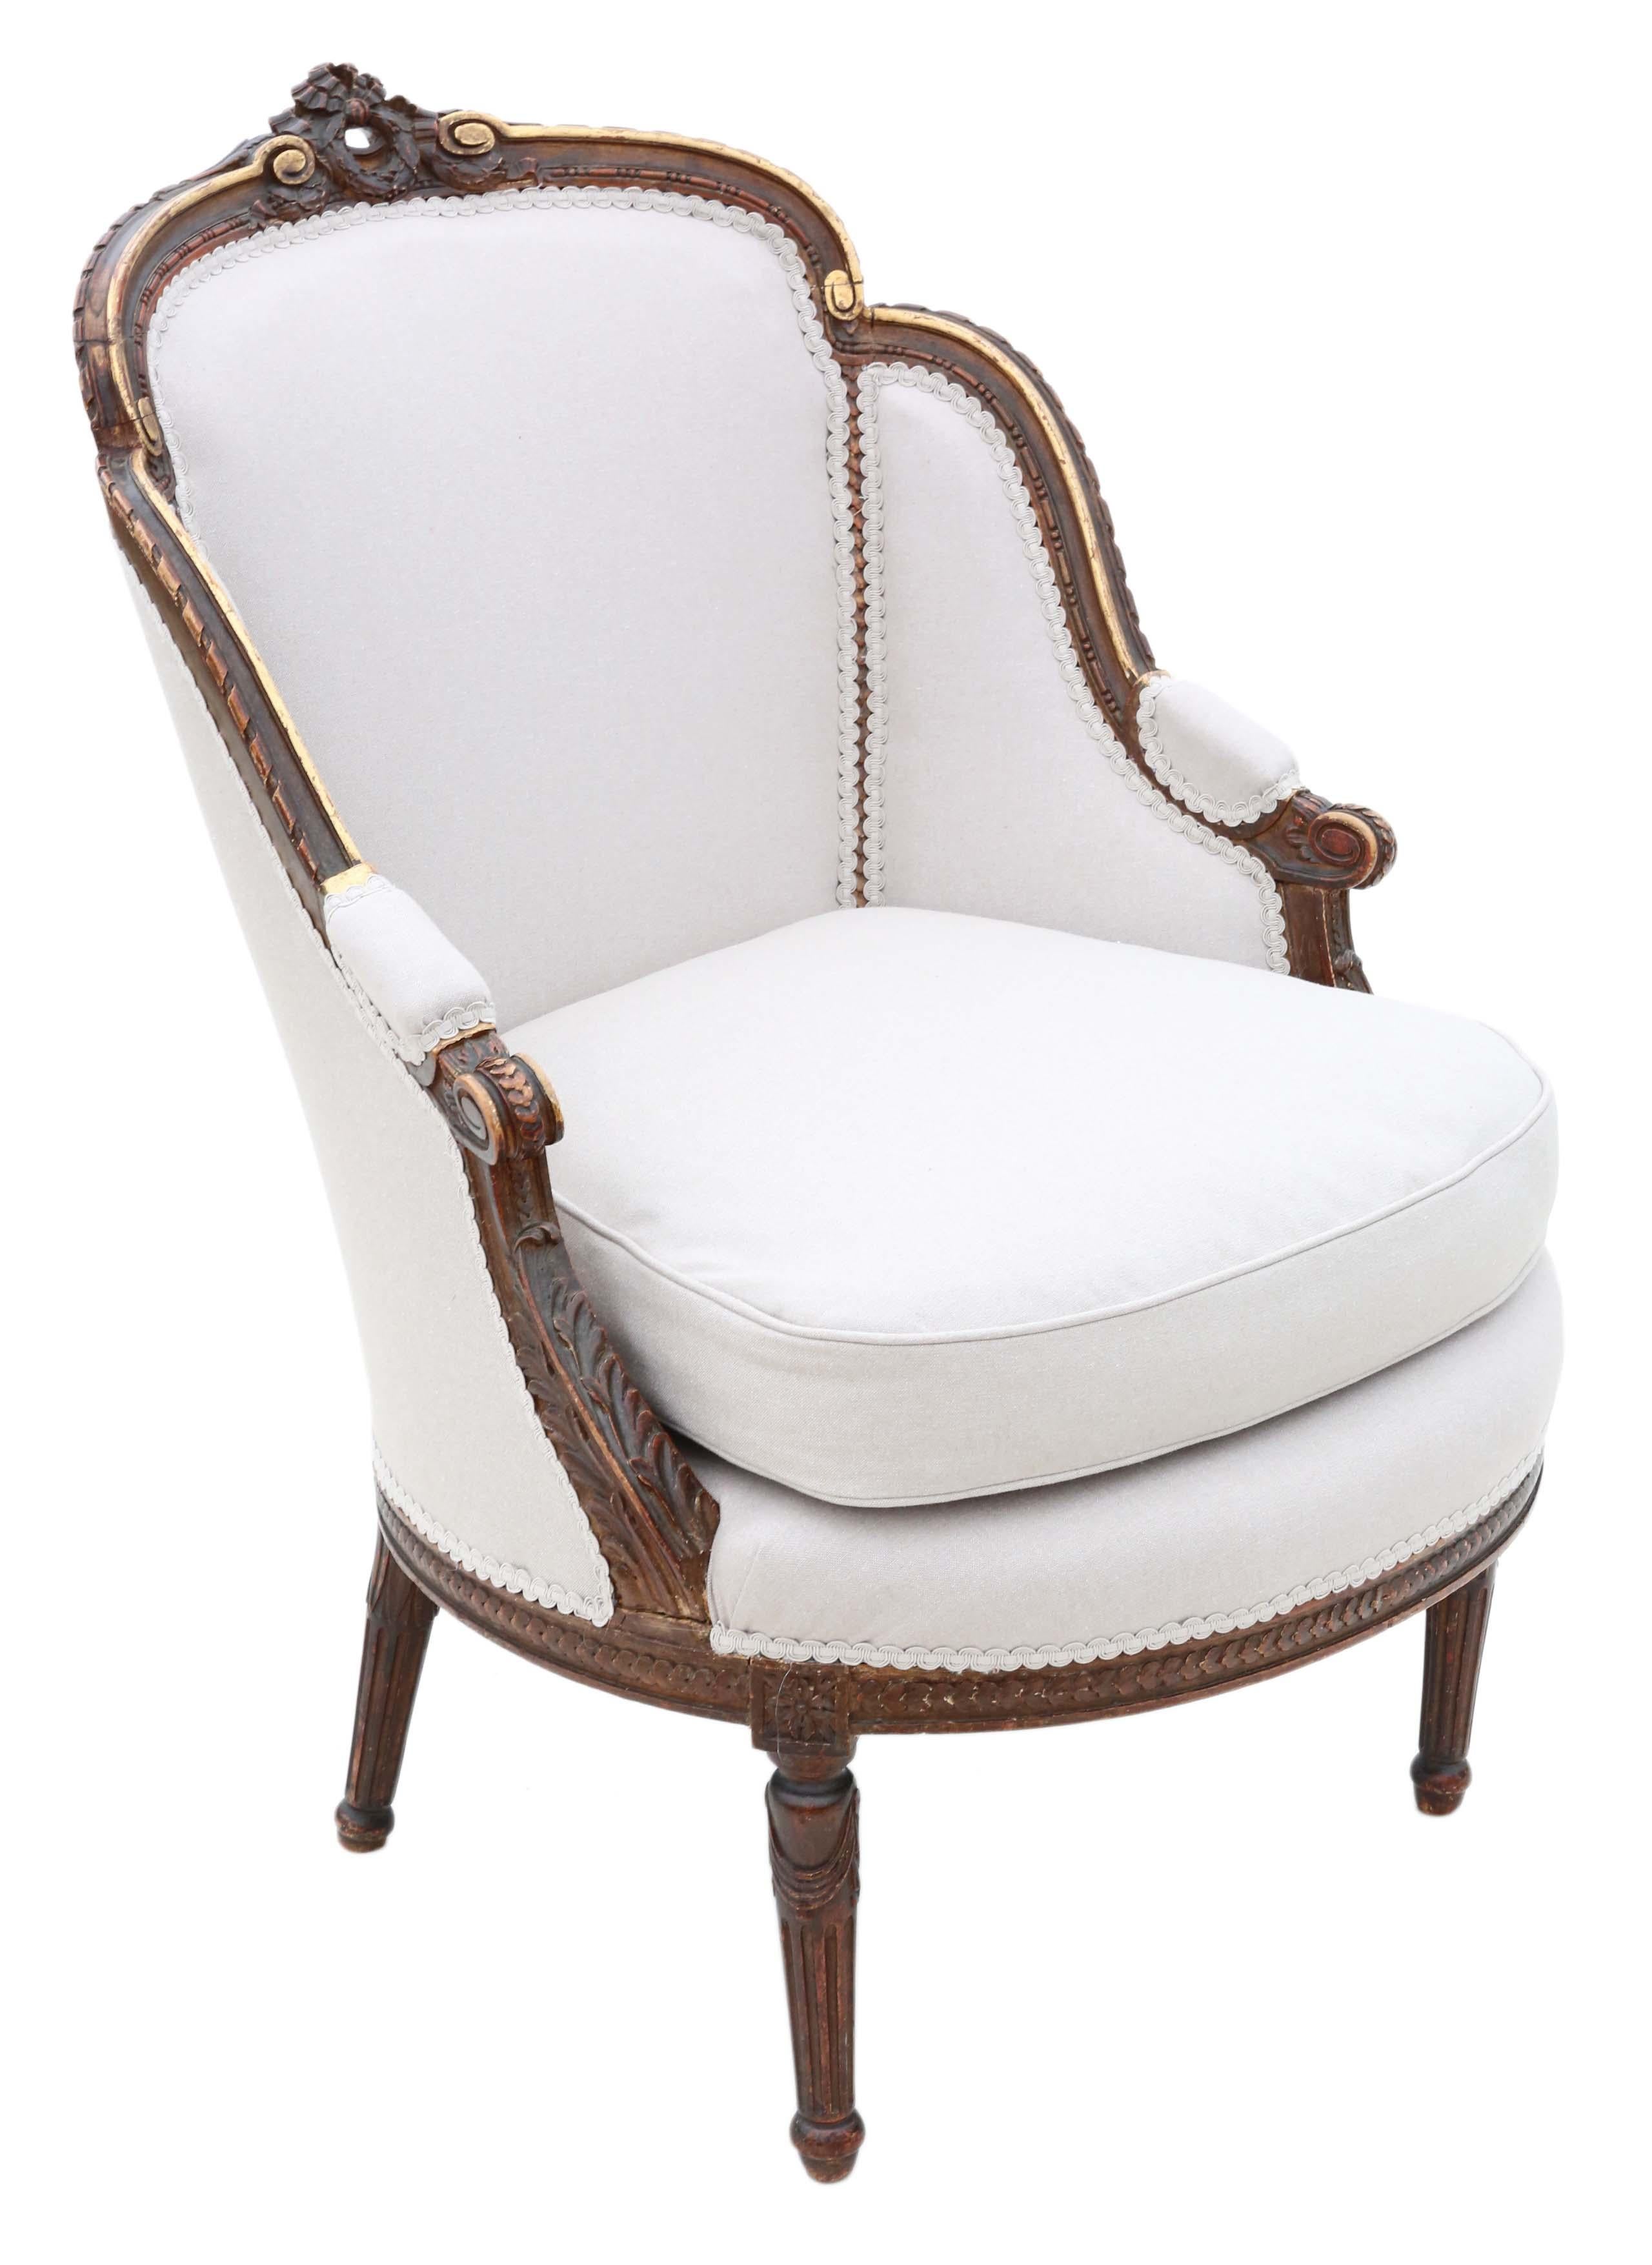 Antique Rare Gilt 19th Century Chair Armchair 2